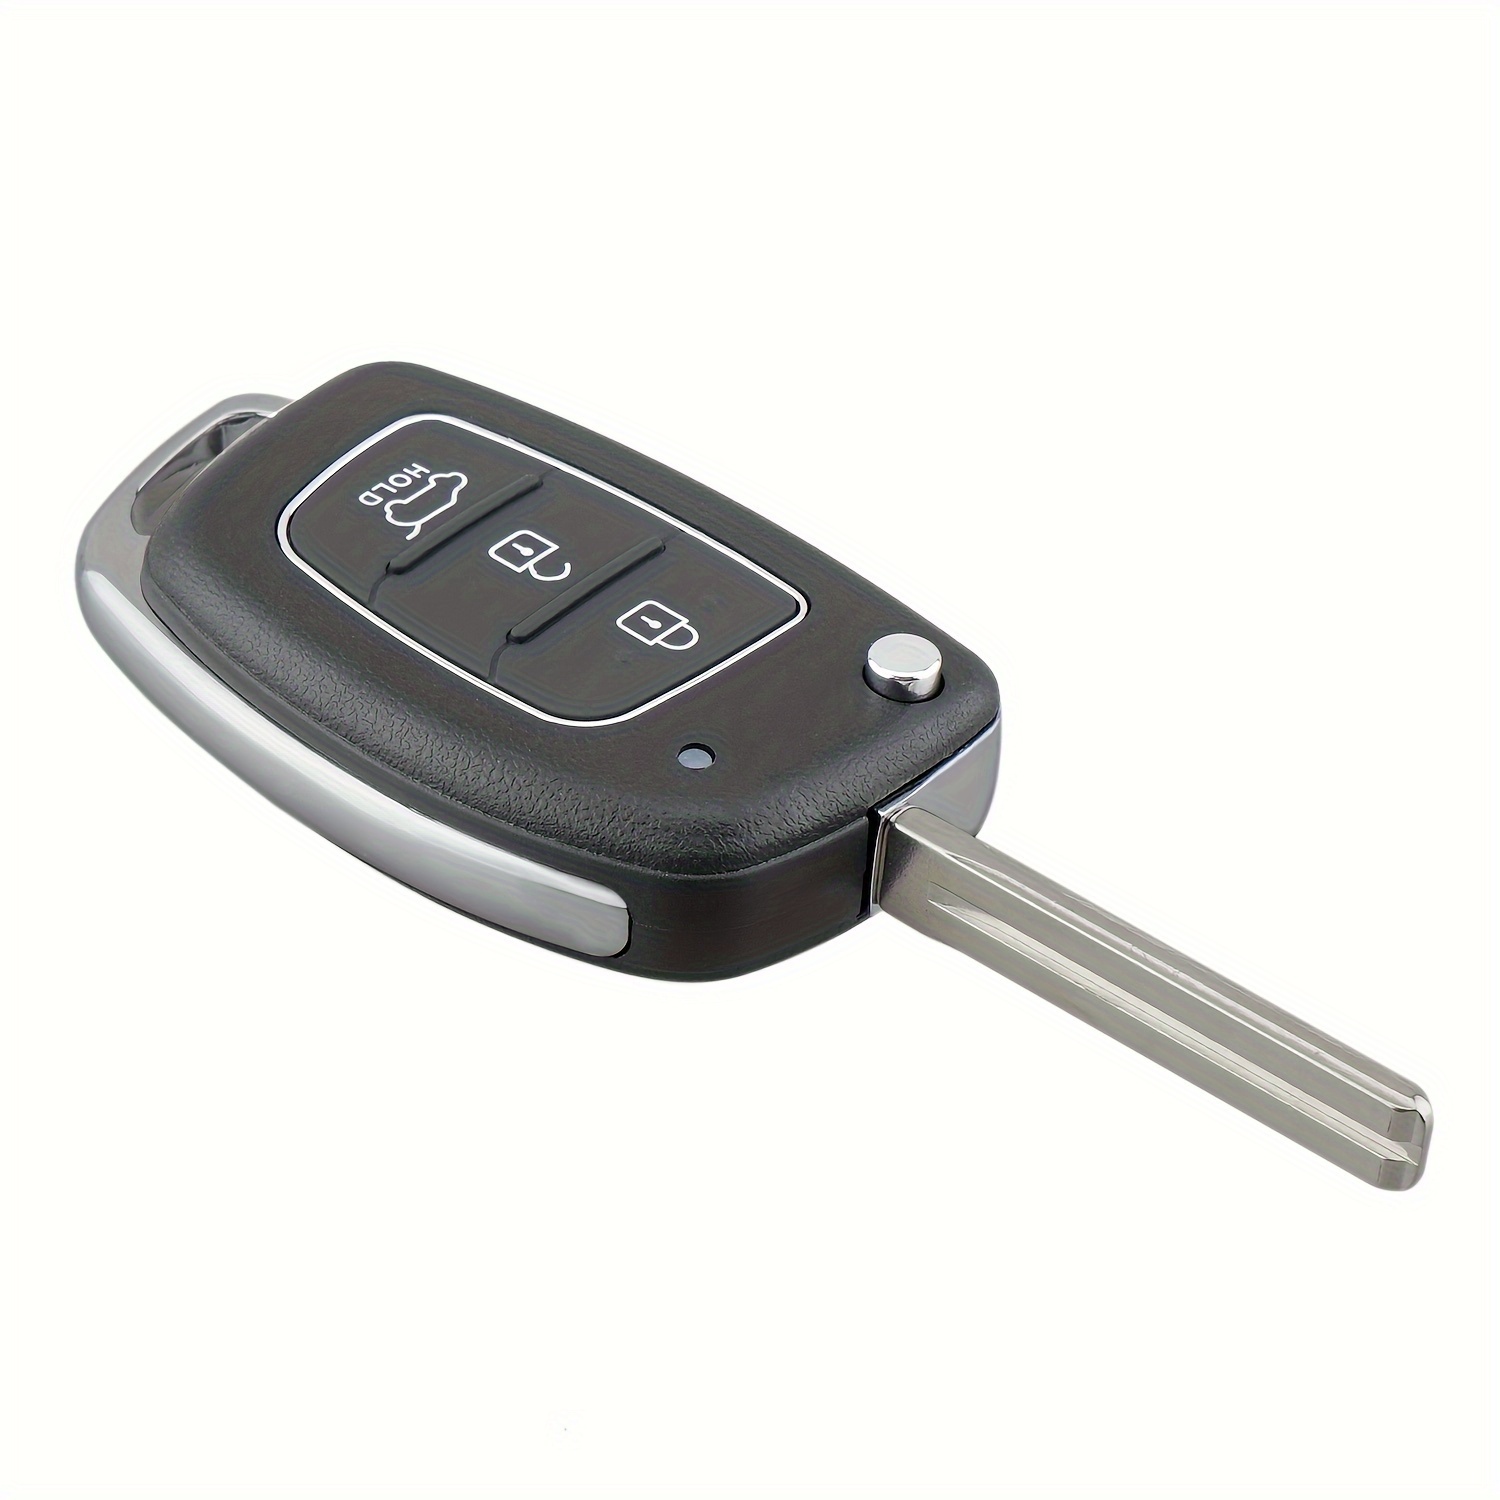 Ersatz 3 Tasten Remote Key Pad für Hyundai I10 I20 I30 Ix35 für